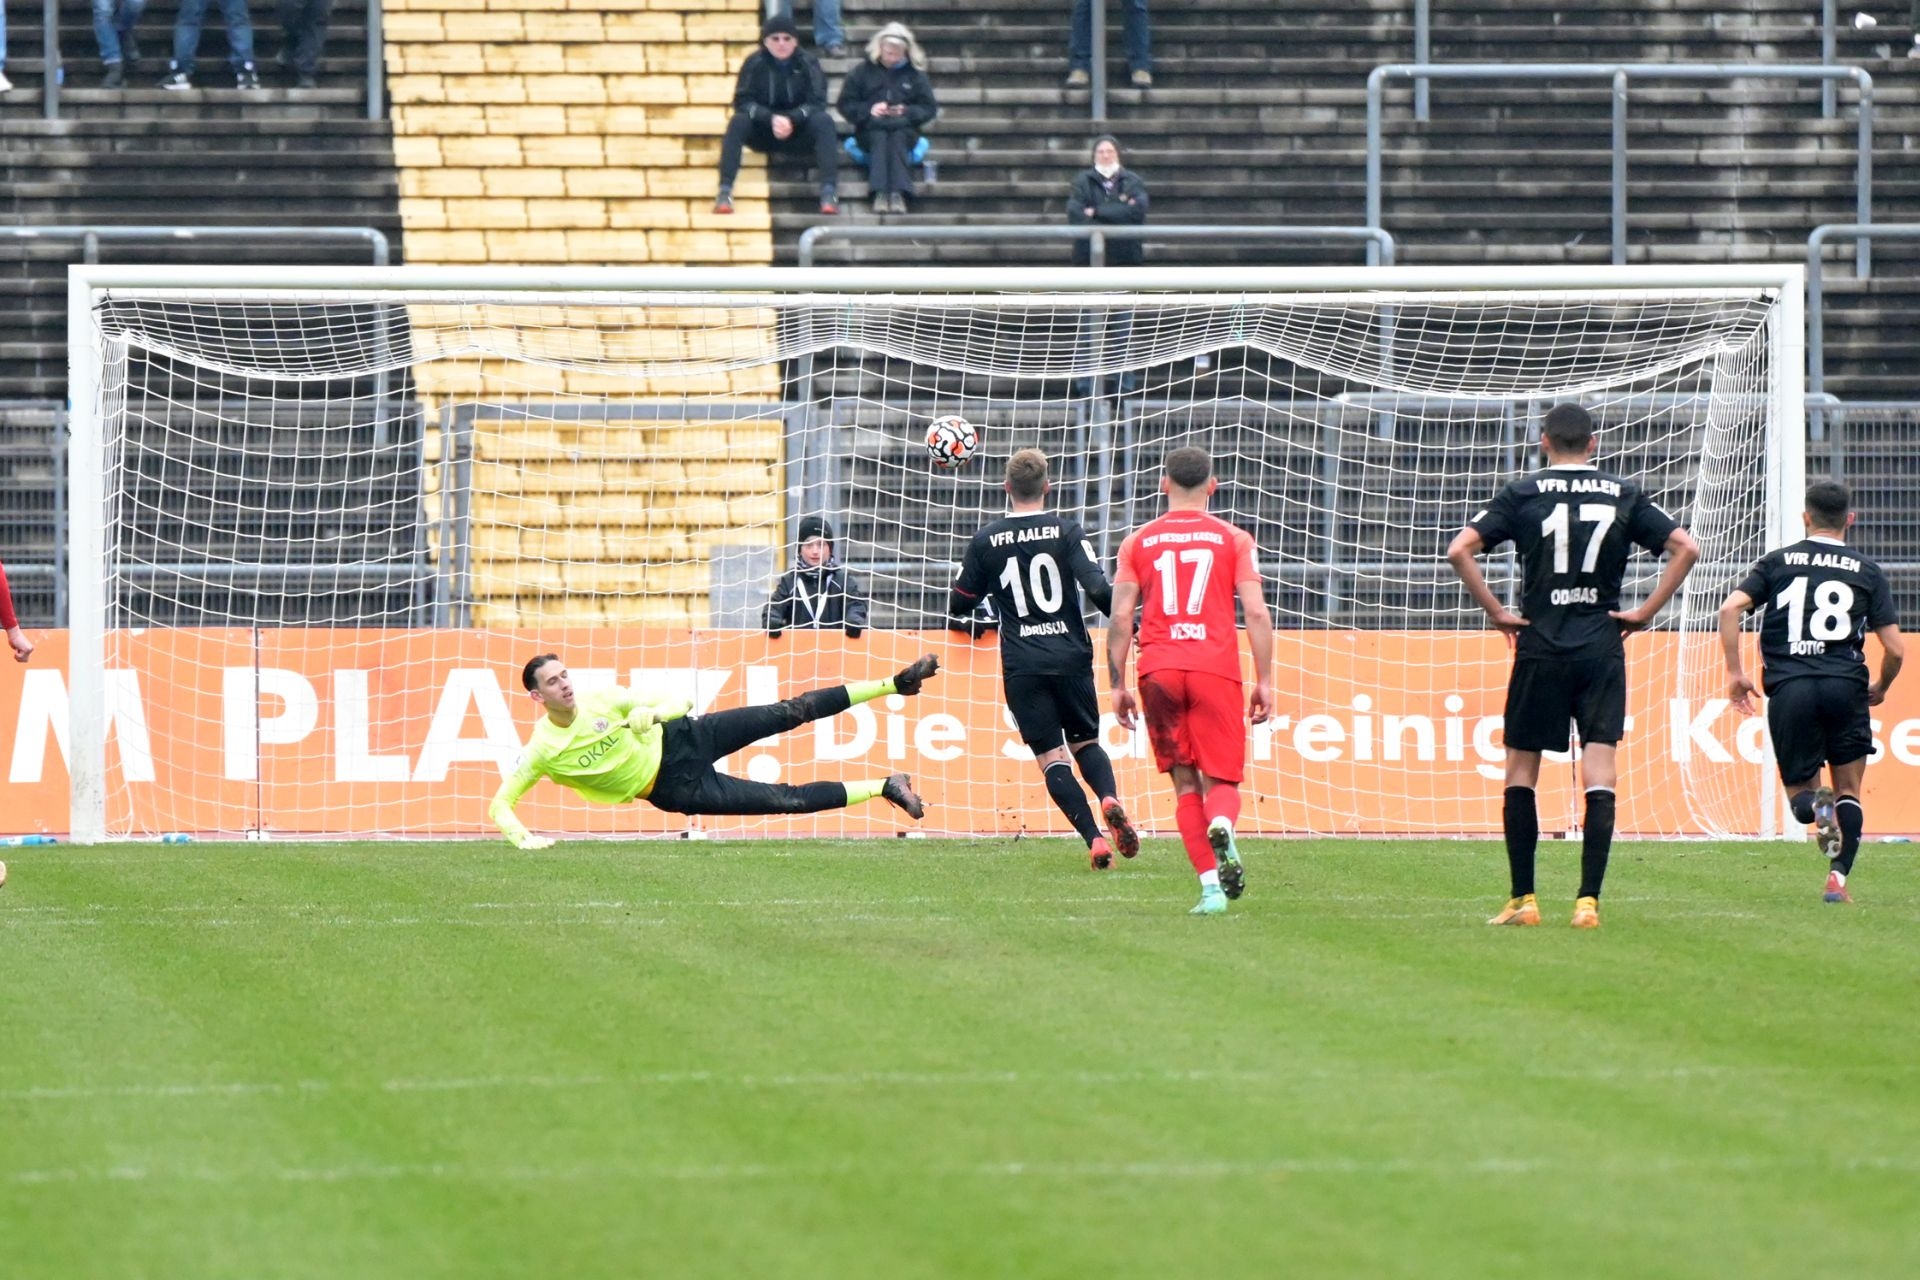 Regionalliga Südwest, Saison 2021/22, KSV Hessen Kassel, VfR Aalen, Endstand 1:2, Tor zum 0:2